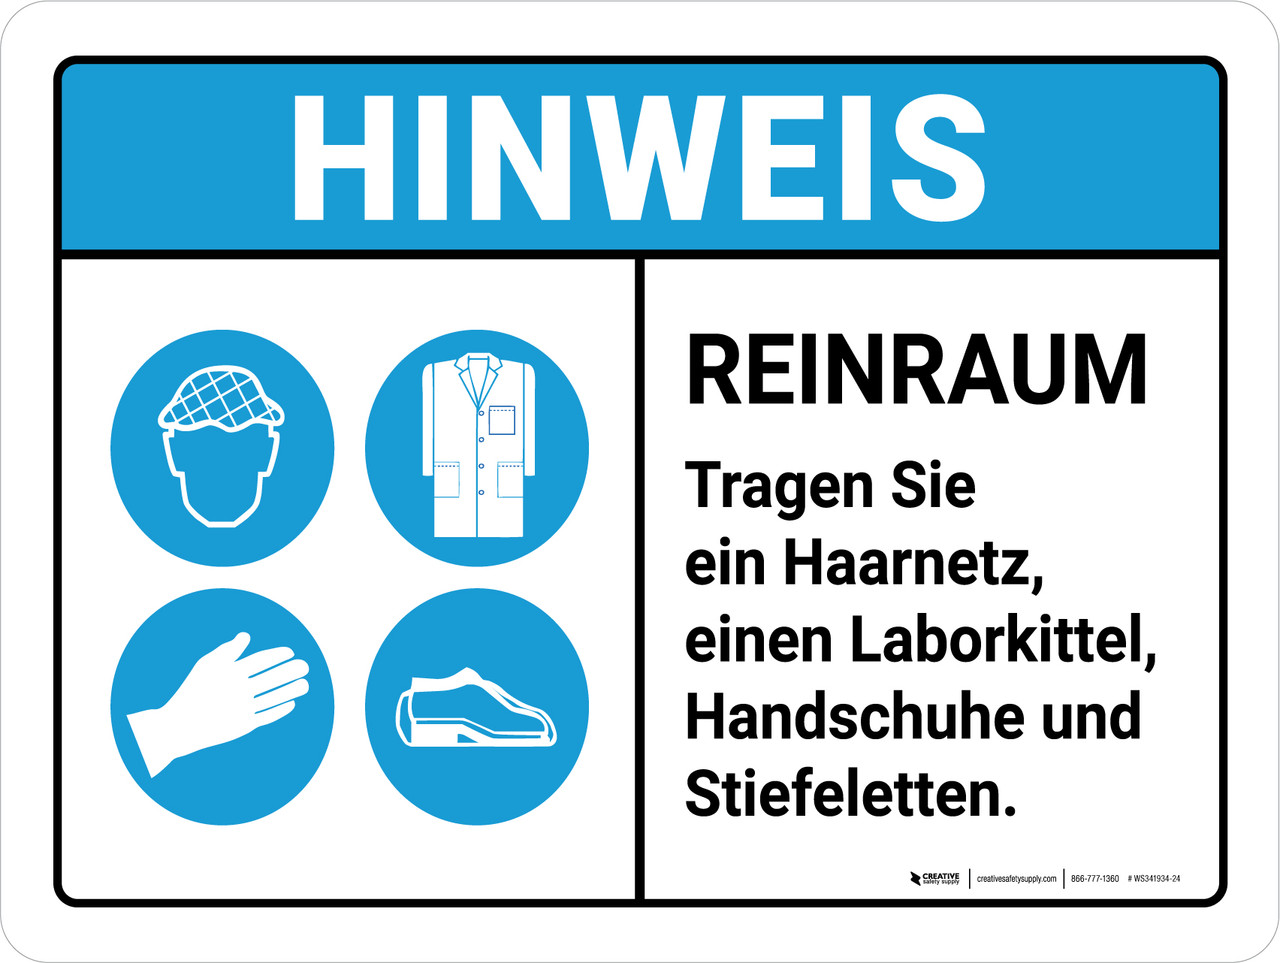 Hinweis - Reinraum (Notice - Clean ROOM) Landscape German - Wall Sign